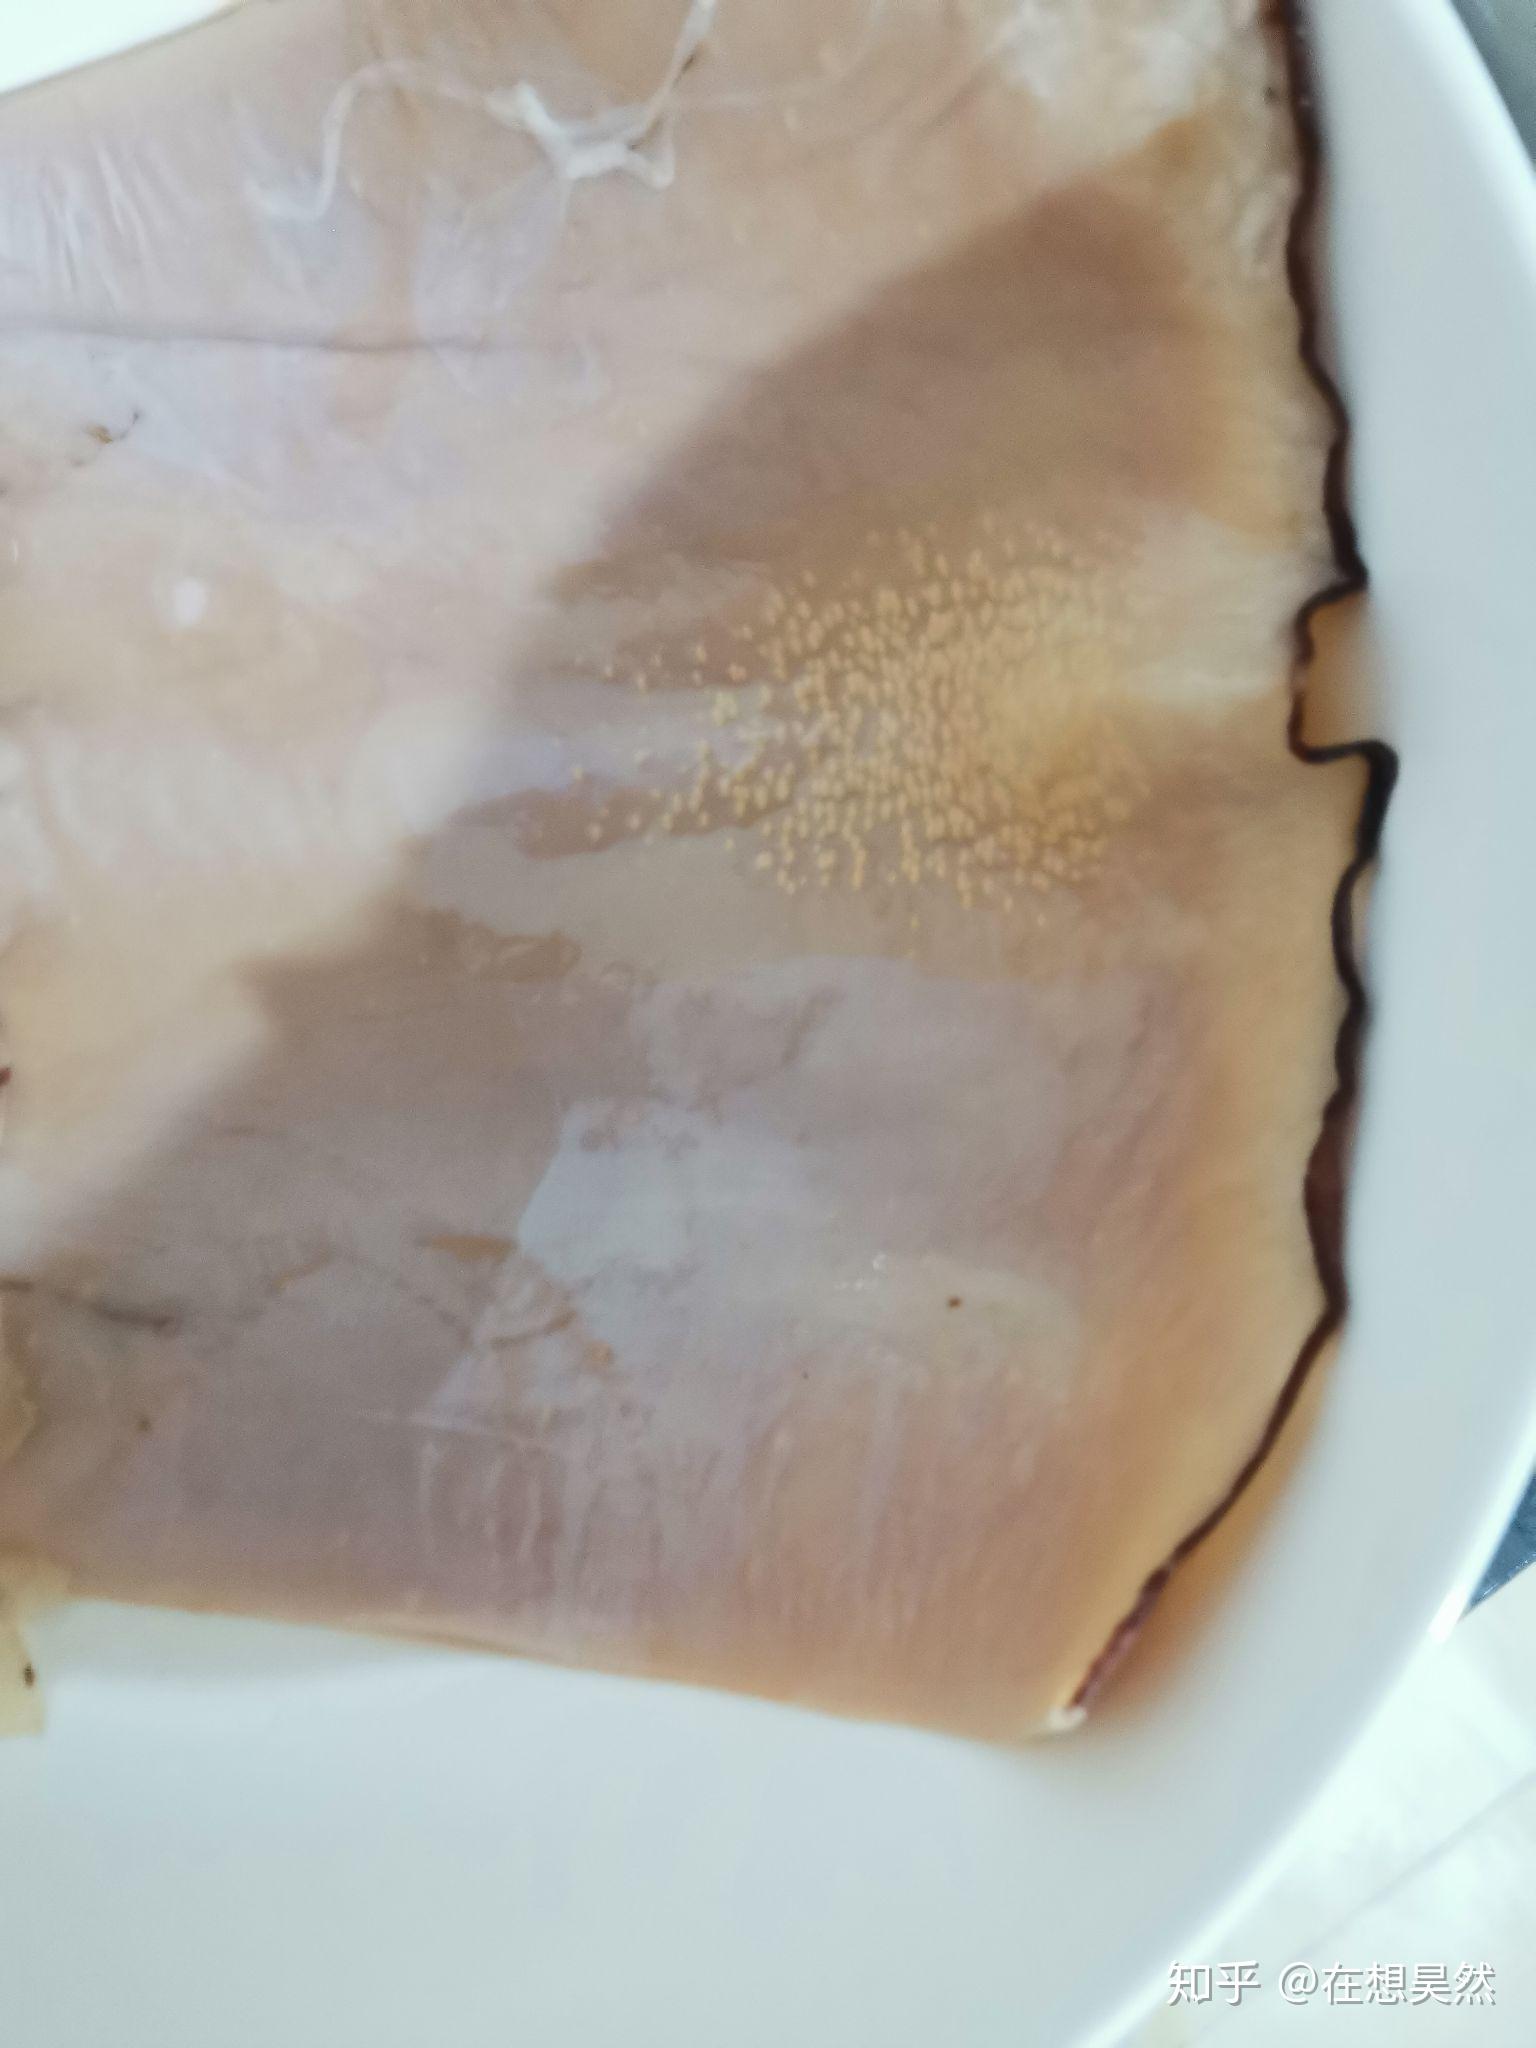 鱿鱼干泡发后肉里有黄色颗粒状的是什么